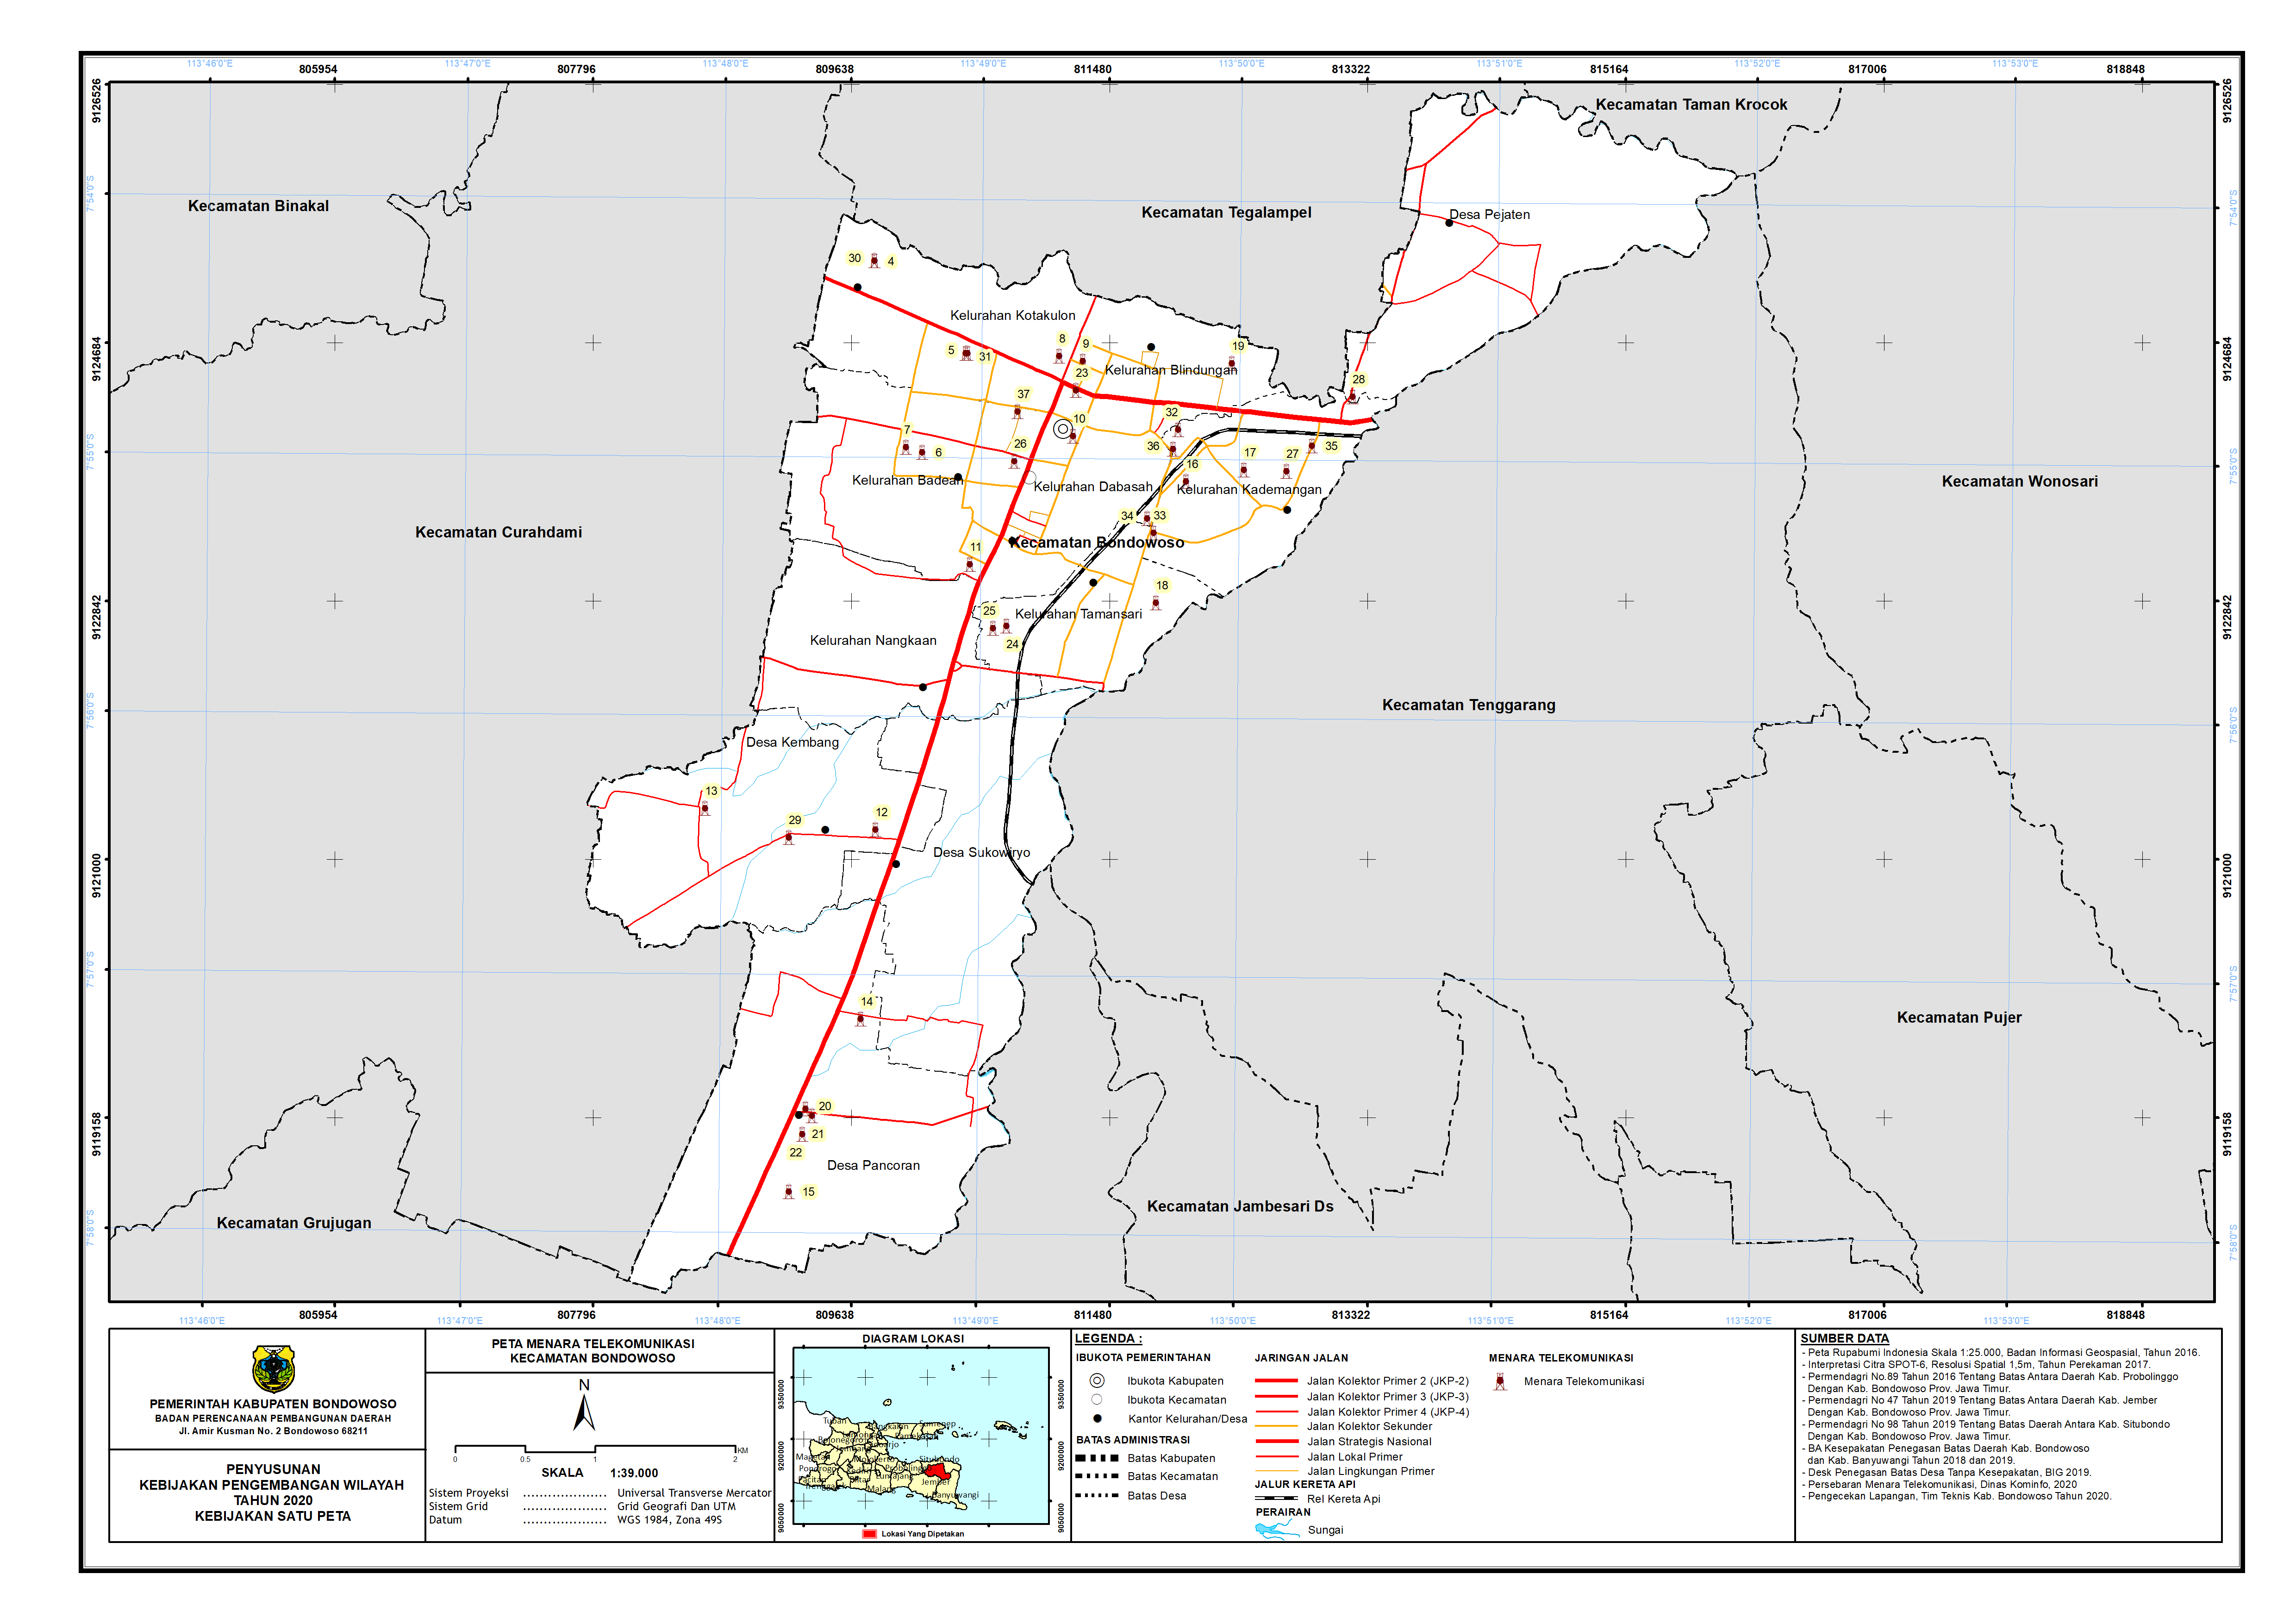 Peta Menara Telekomunikasi Kecamatan Bondowoso.png